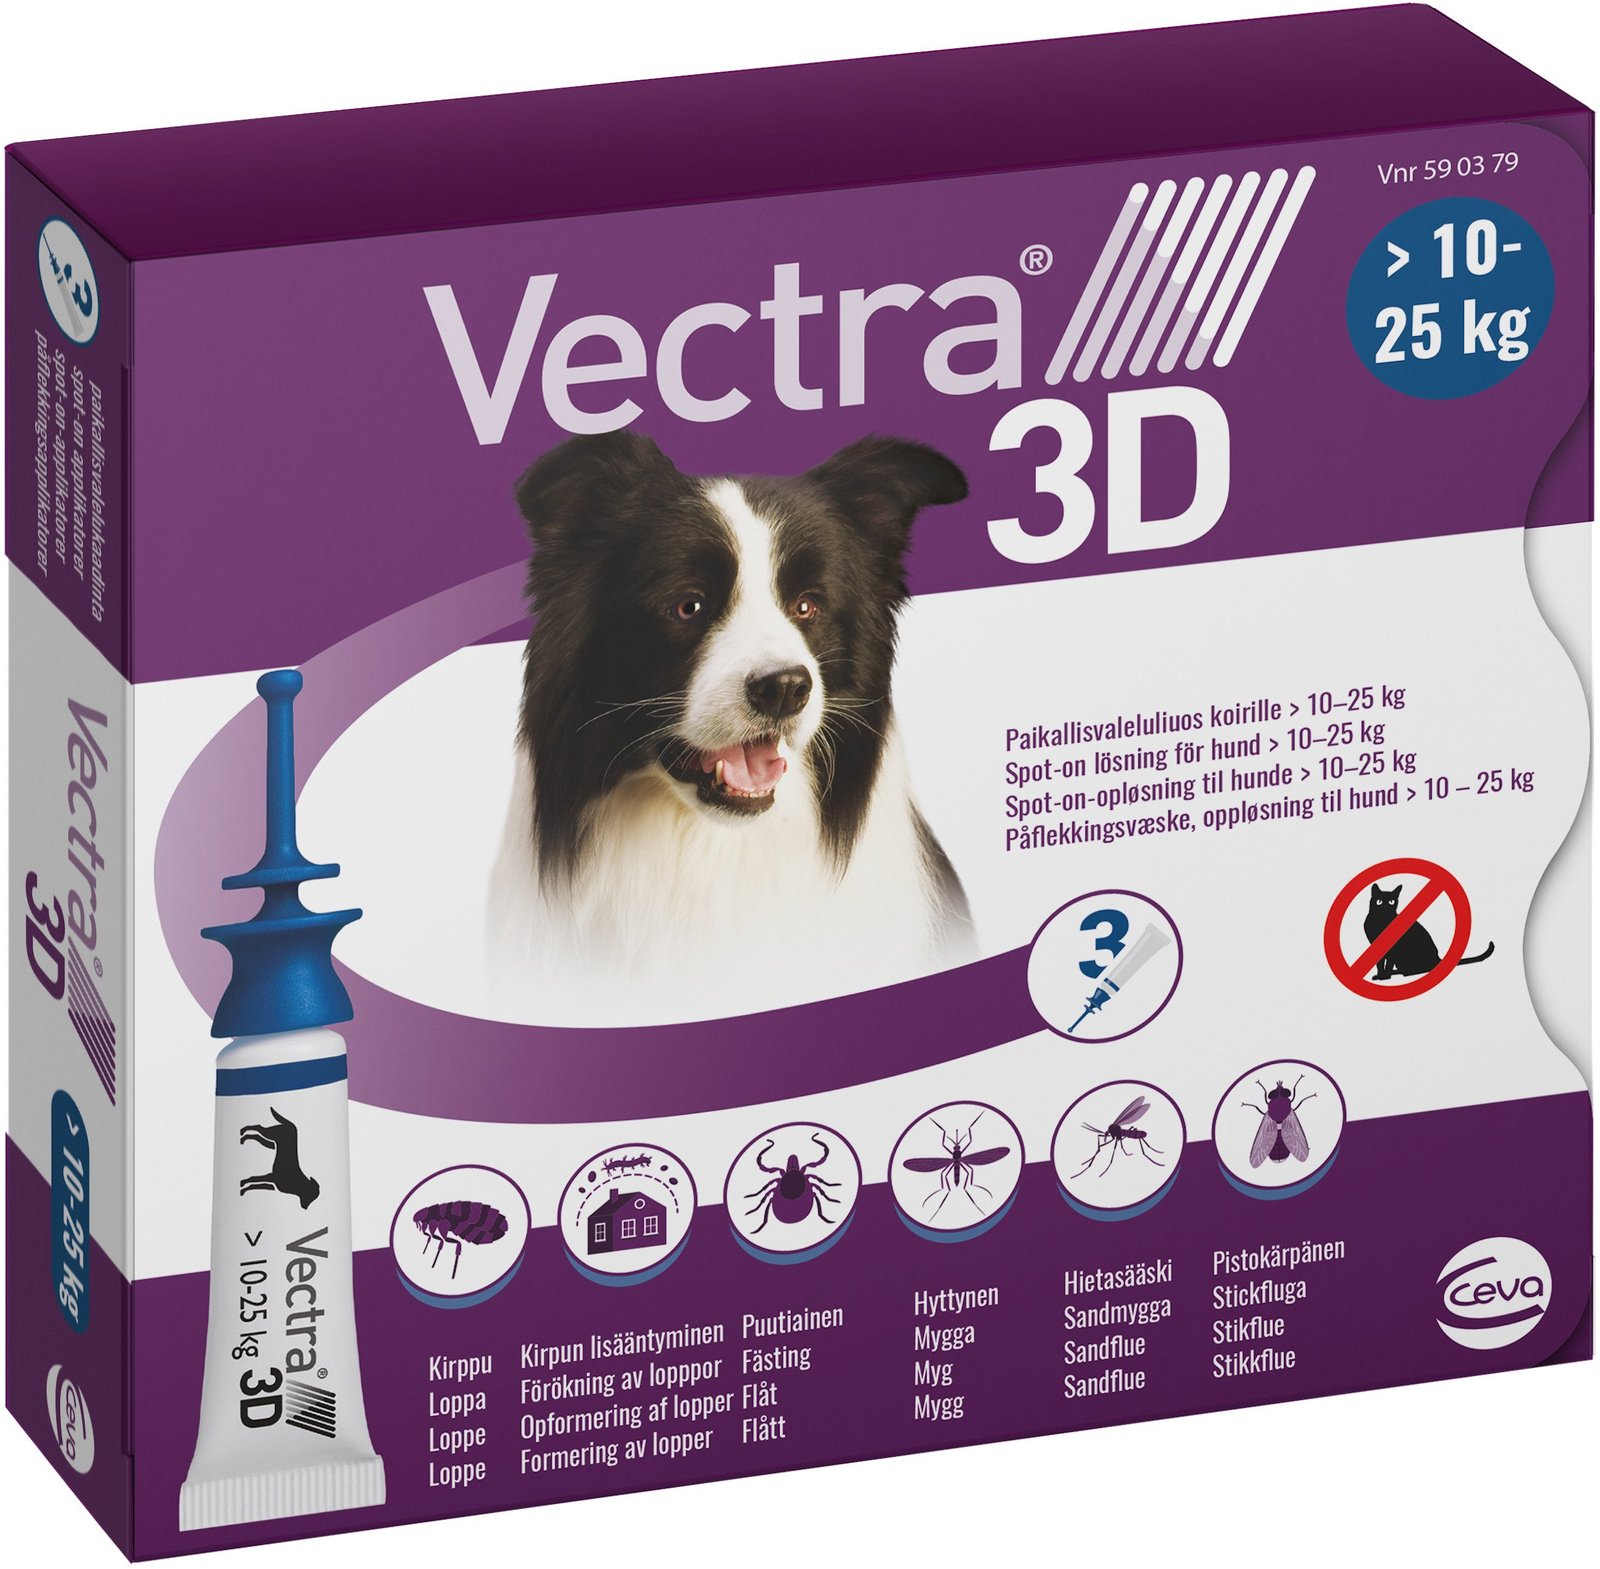 Vectra 3D Hund >10-25 kg Spot-on lösning 3 x 3,6 ml